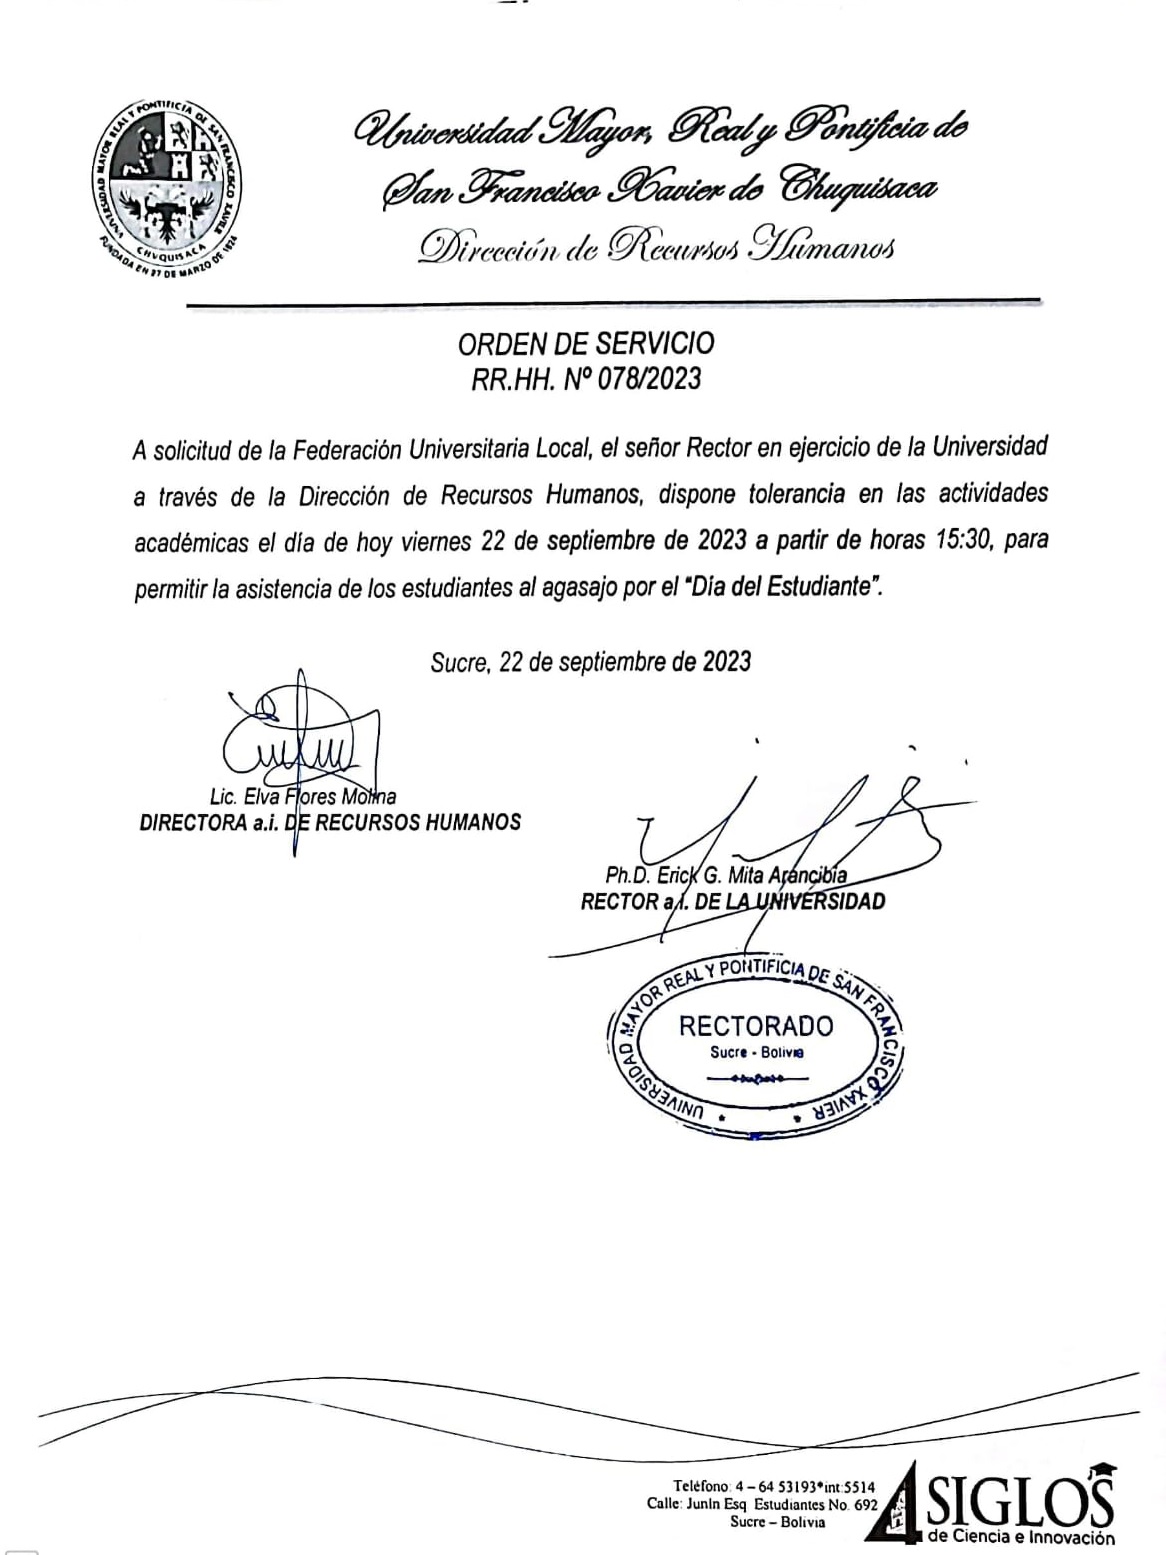 ORDEN DE SERVICIO RR.HH. Nº 078/2023, TOLERANCIA ACTIVIDADES ACADÉMICAS.